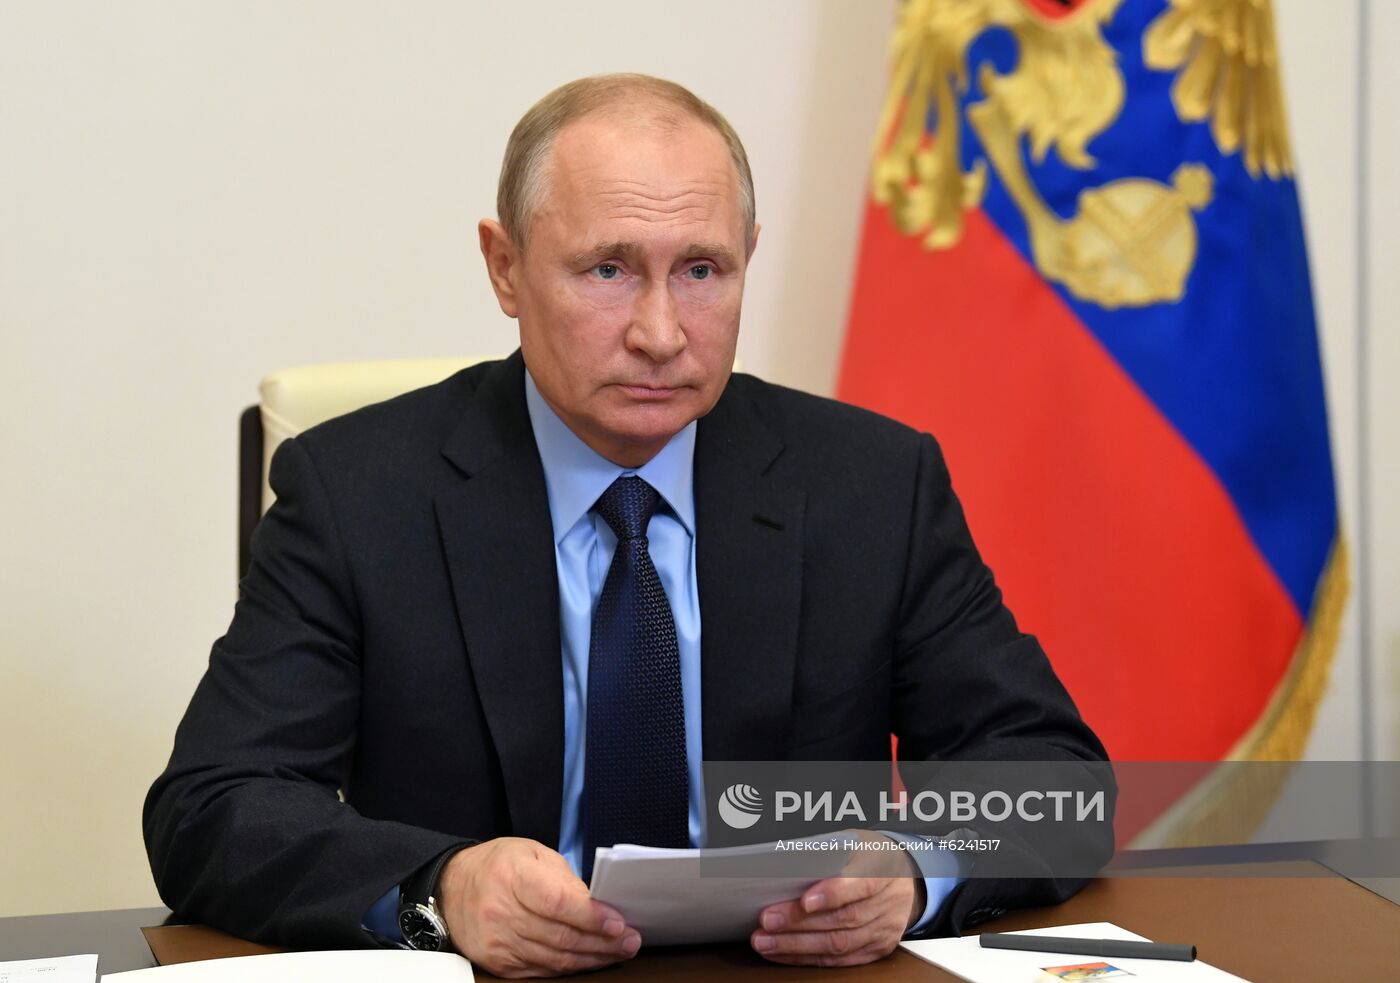 Президент РФ В. Путин провел совещание о развитии генетических технологий в РФ